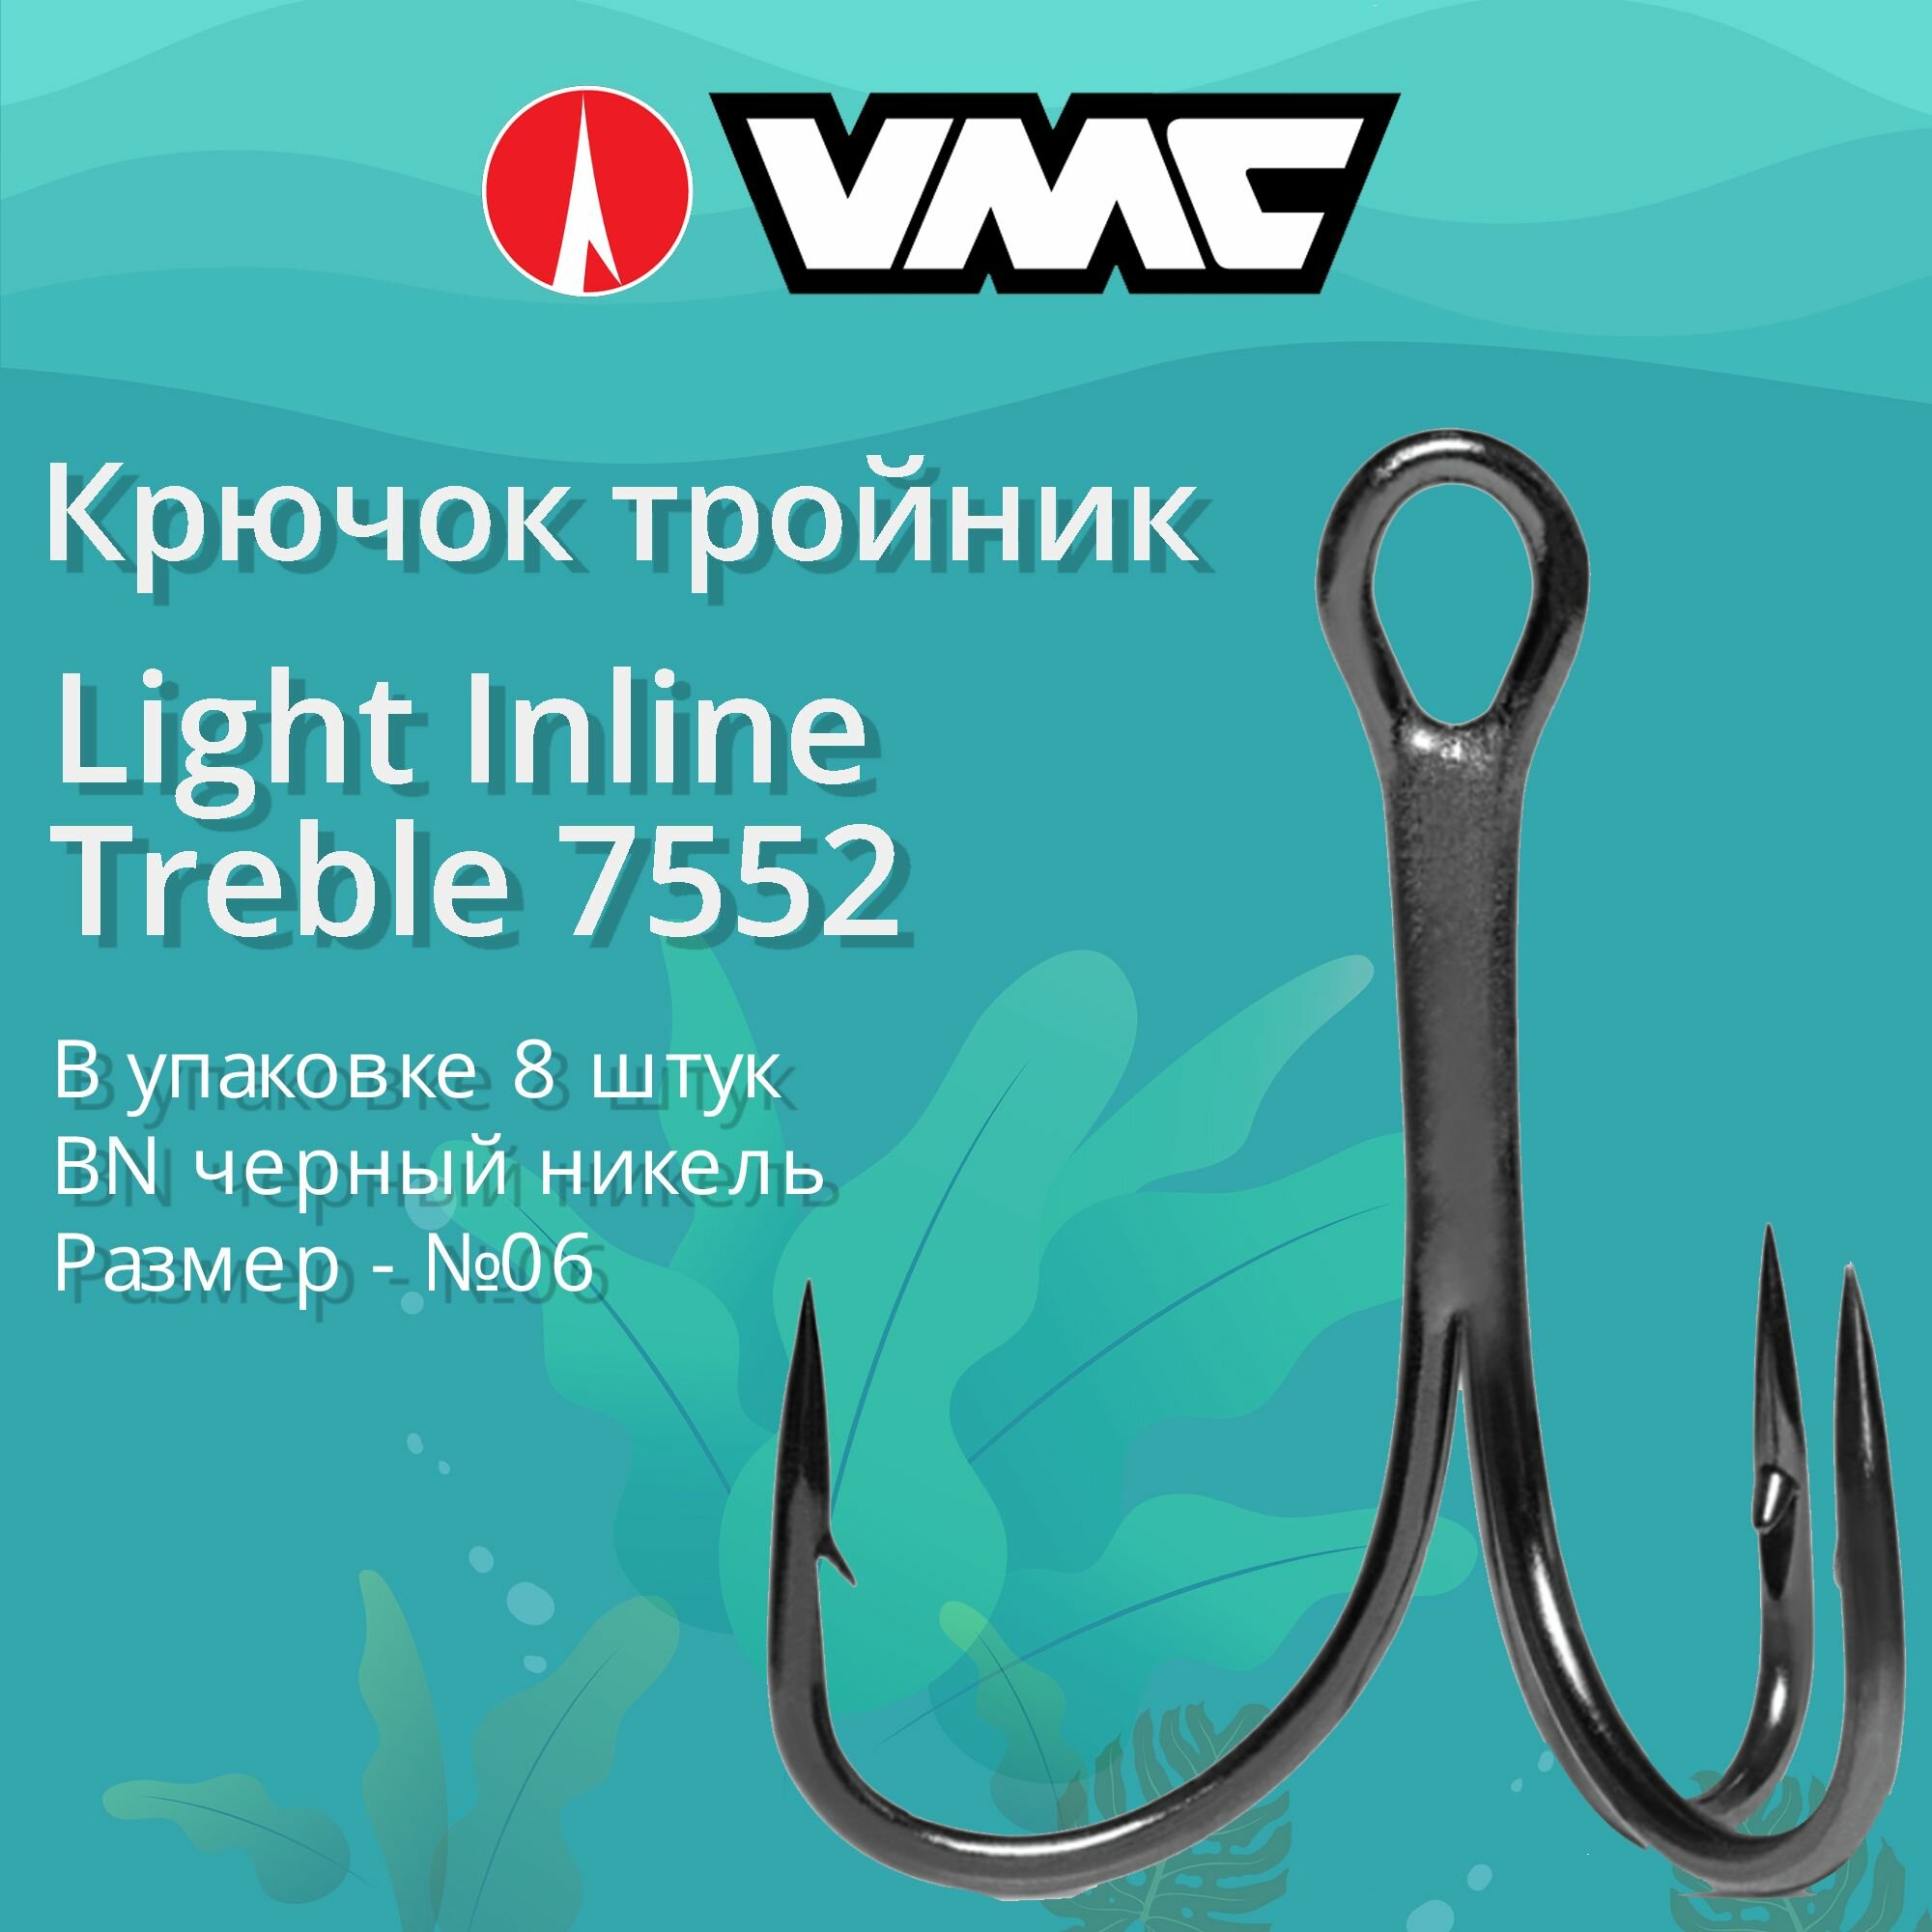 Крючки для рыбалки (тройник) VMC Light Inline Treble 7552 BN (черн. никель) №06 (упаковка 8 штук)